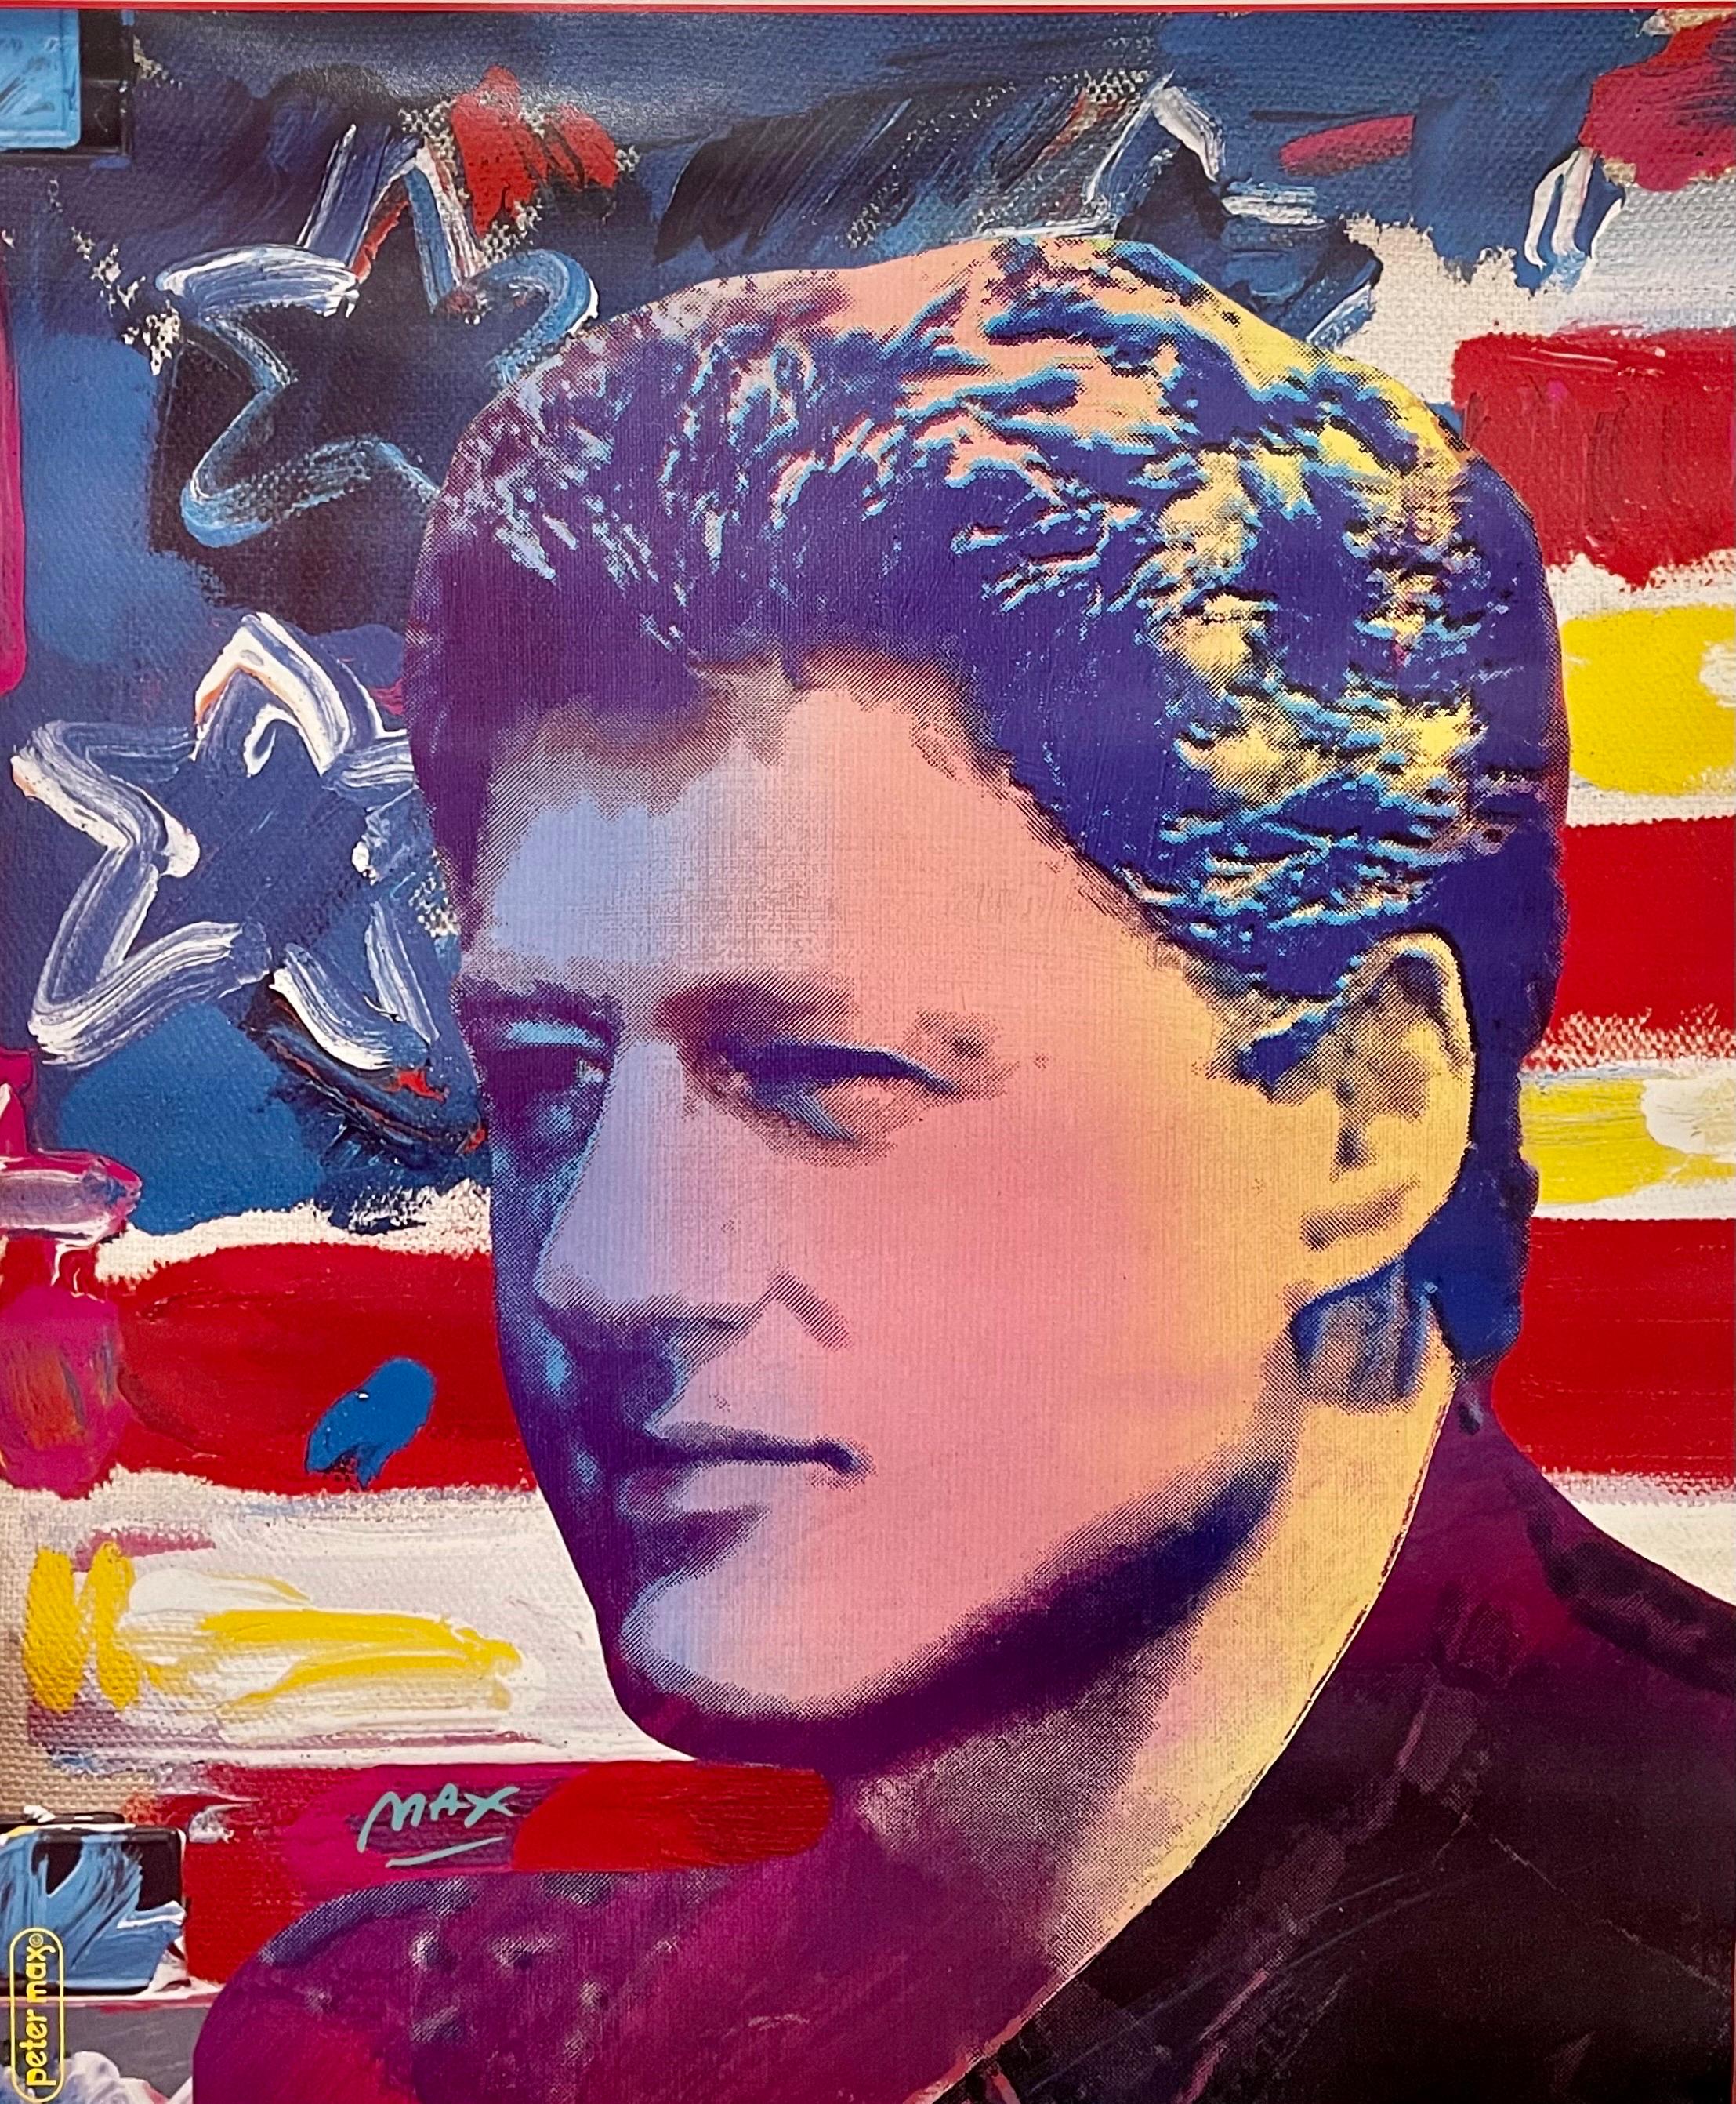 Künstler: Peter Max, deutsch/amerikanisch (1937 - ) 

Titel: Bill Clintons Amtseinführung, ein amerikanisches Wiedersehen, neue Anfänge, erneuerte Hoffnung
Handsigniert mit Marker und Widmung
Jahr: 1993 
Medium: Plakat 
Größe: 36 in. x 24